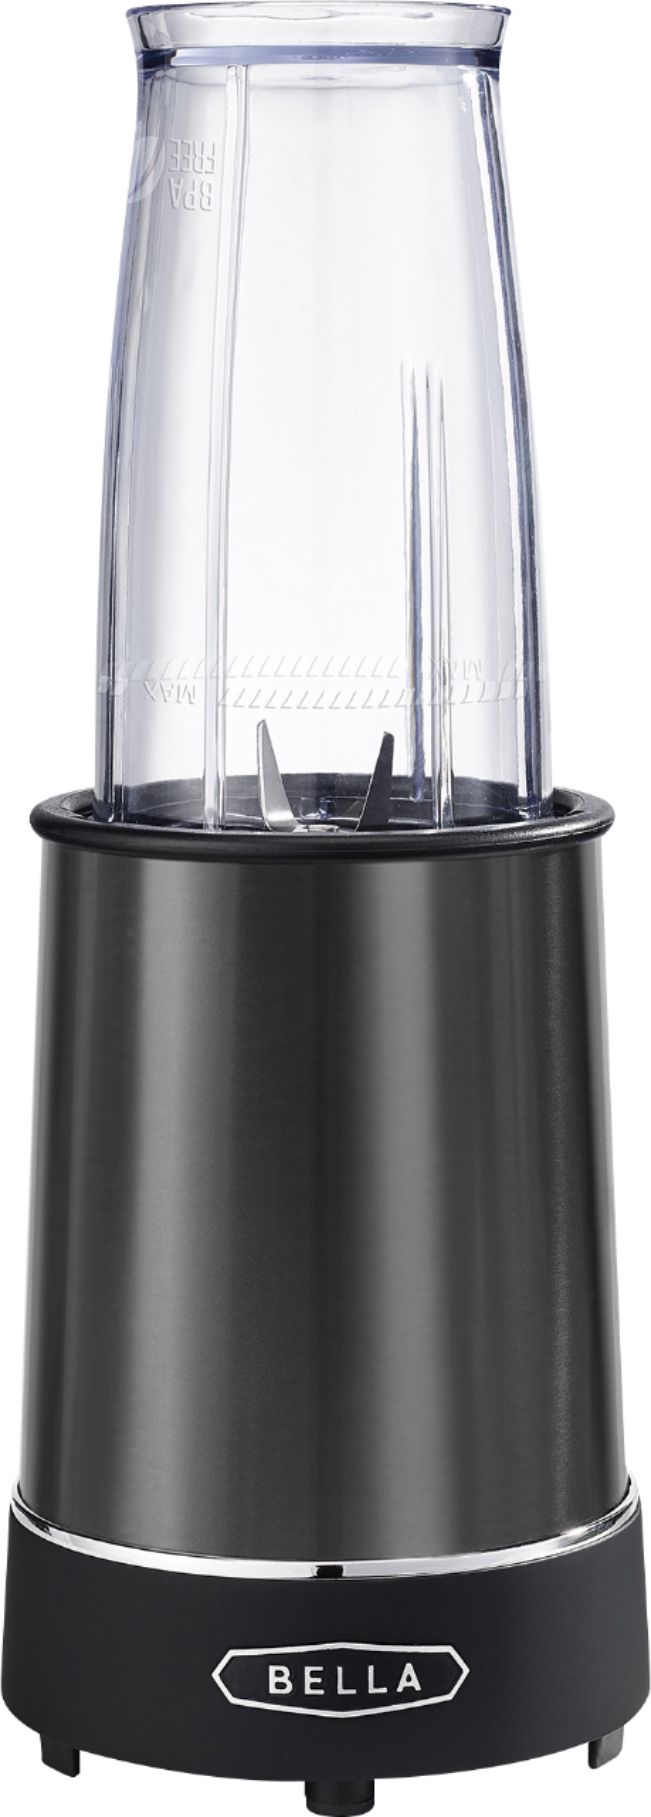 Best Buy: Bella 14-Oz. Rocket Blender Black Stainless steel 14821